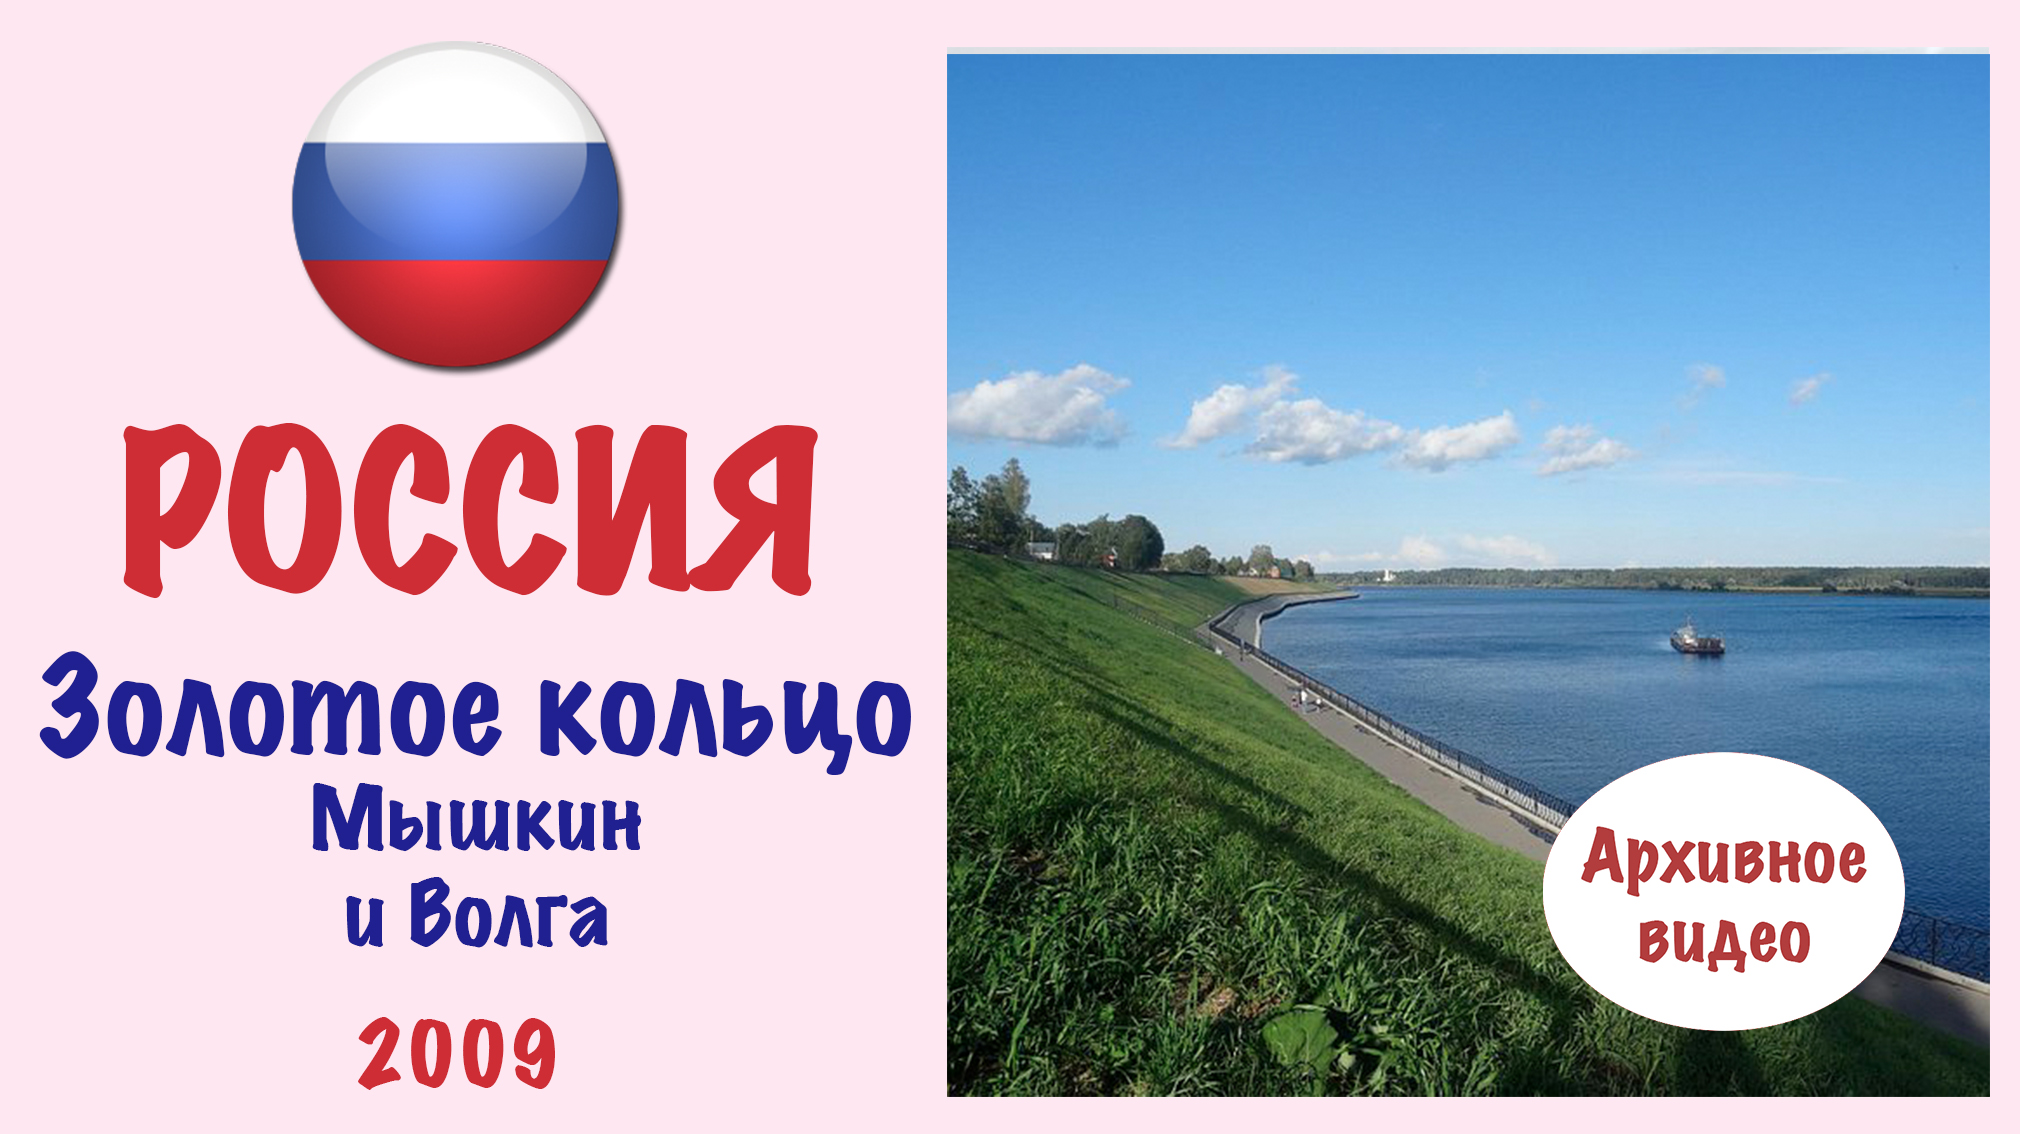 Мышкин и Волга (Россия).